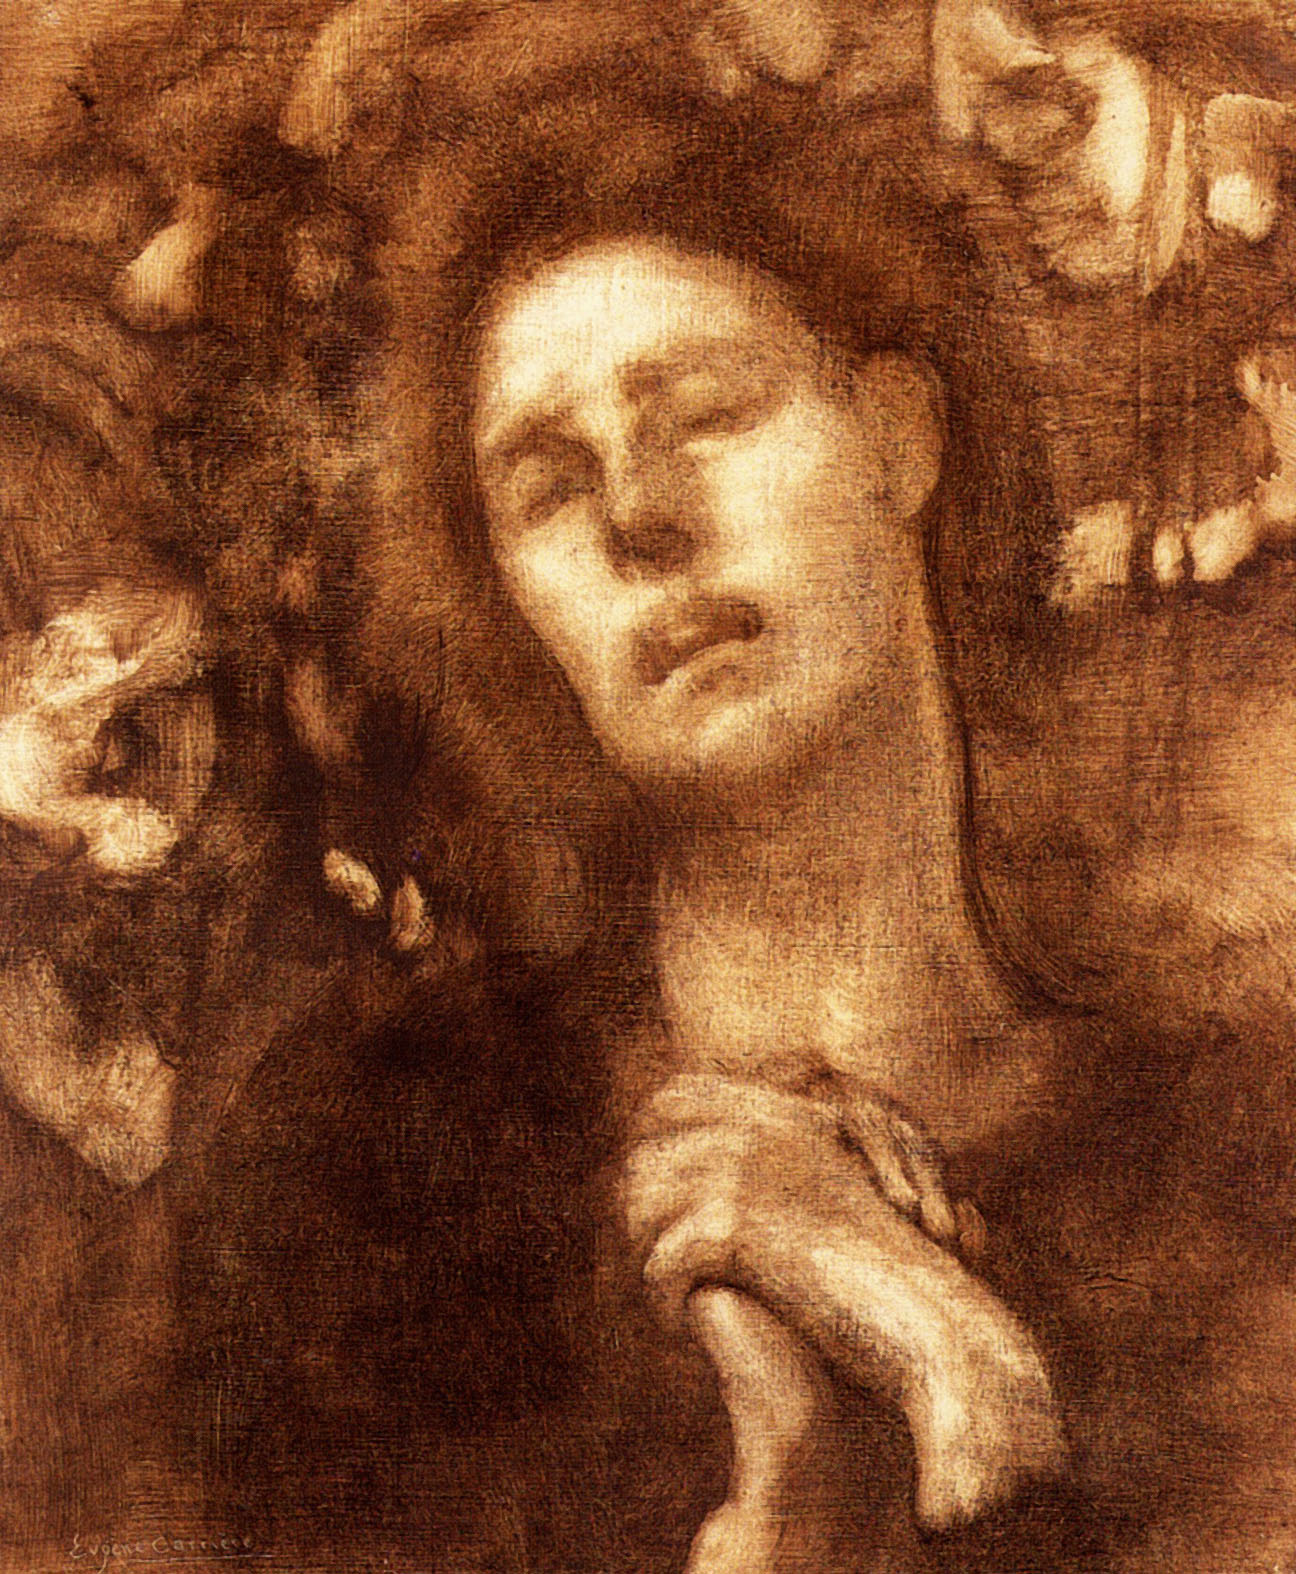 Эжен Каррьер. "Жанна д'Арк прислушивается к голосам". 1899. Музей Орсе, Париж.